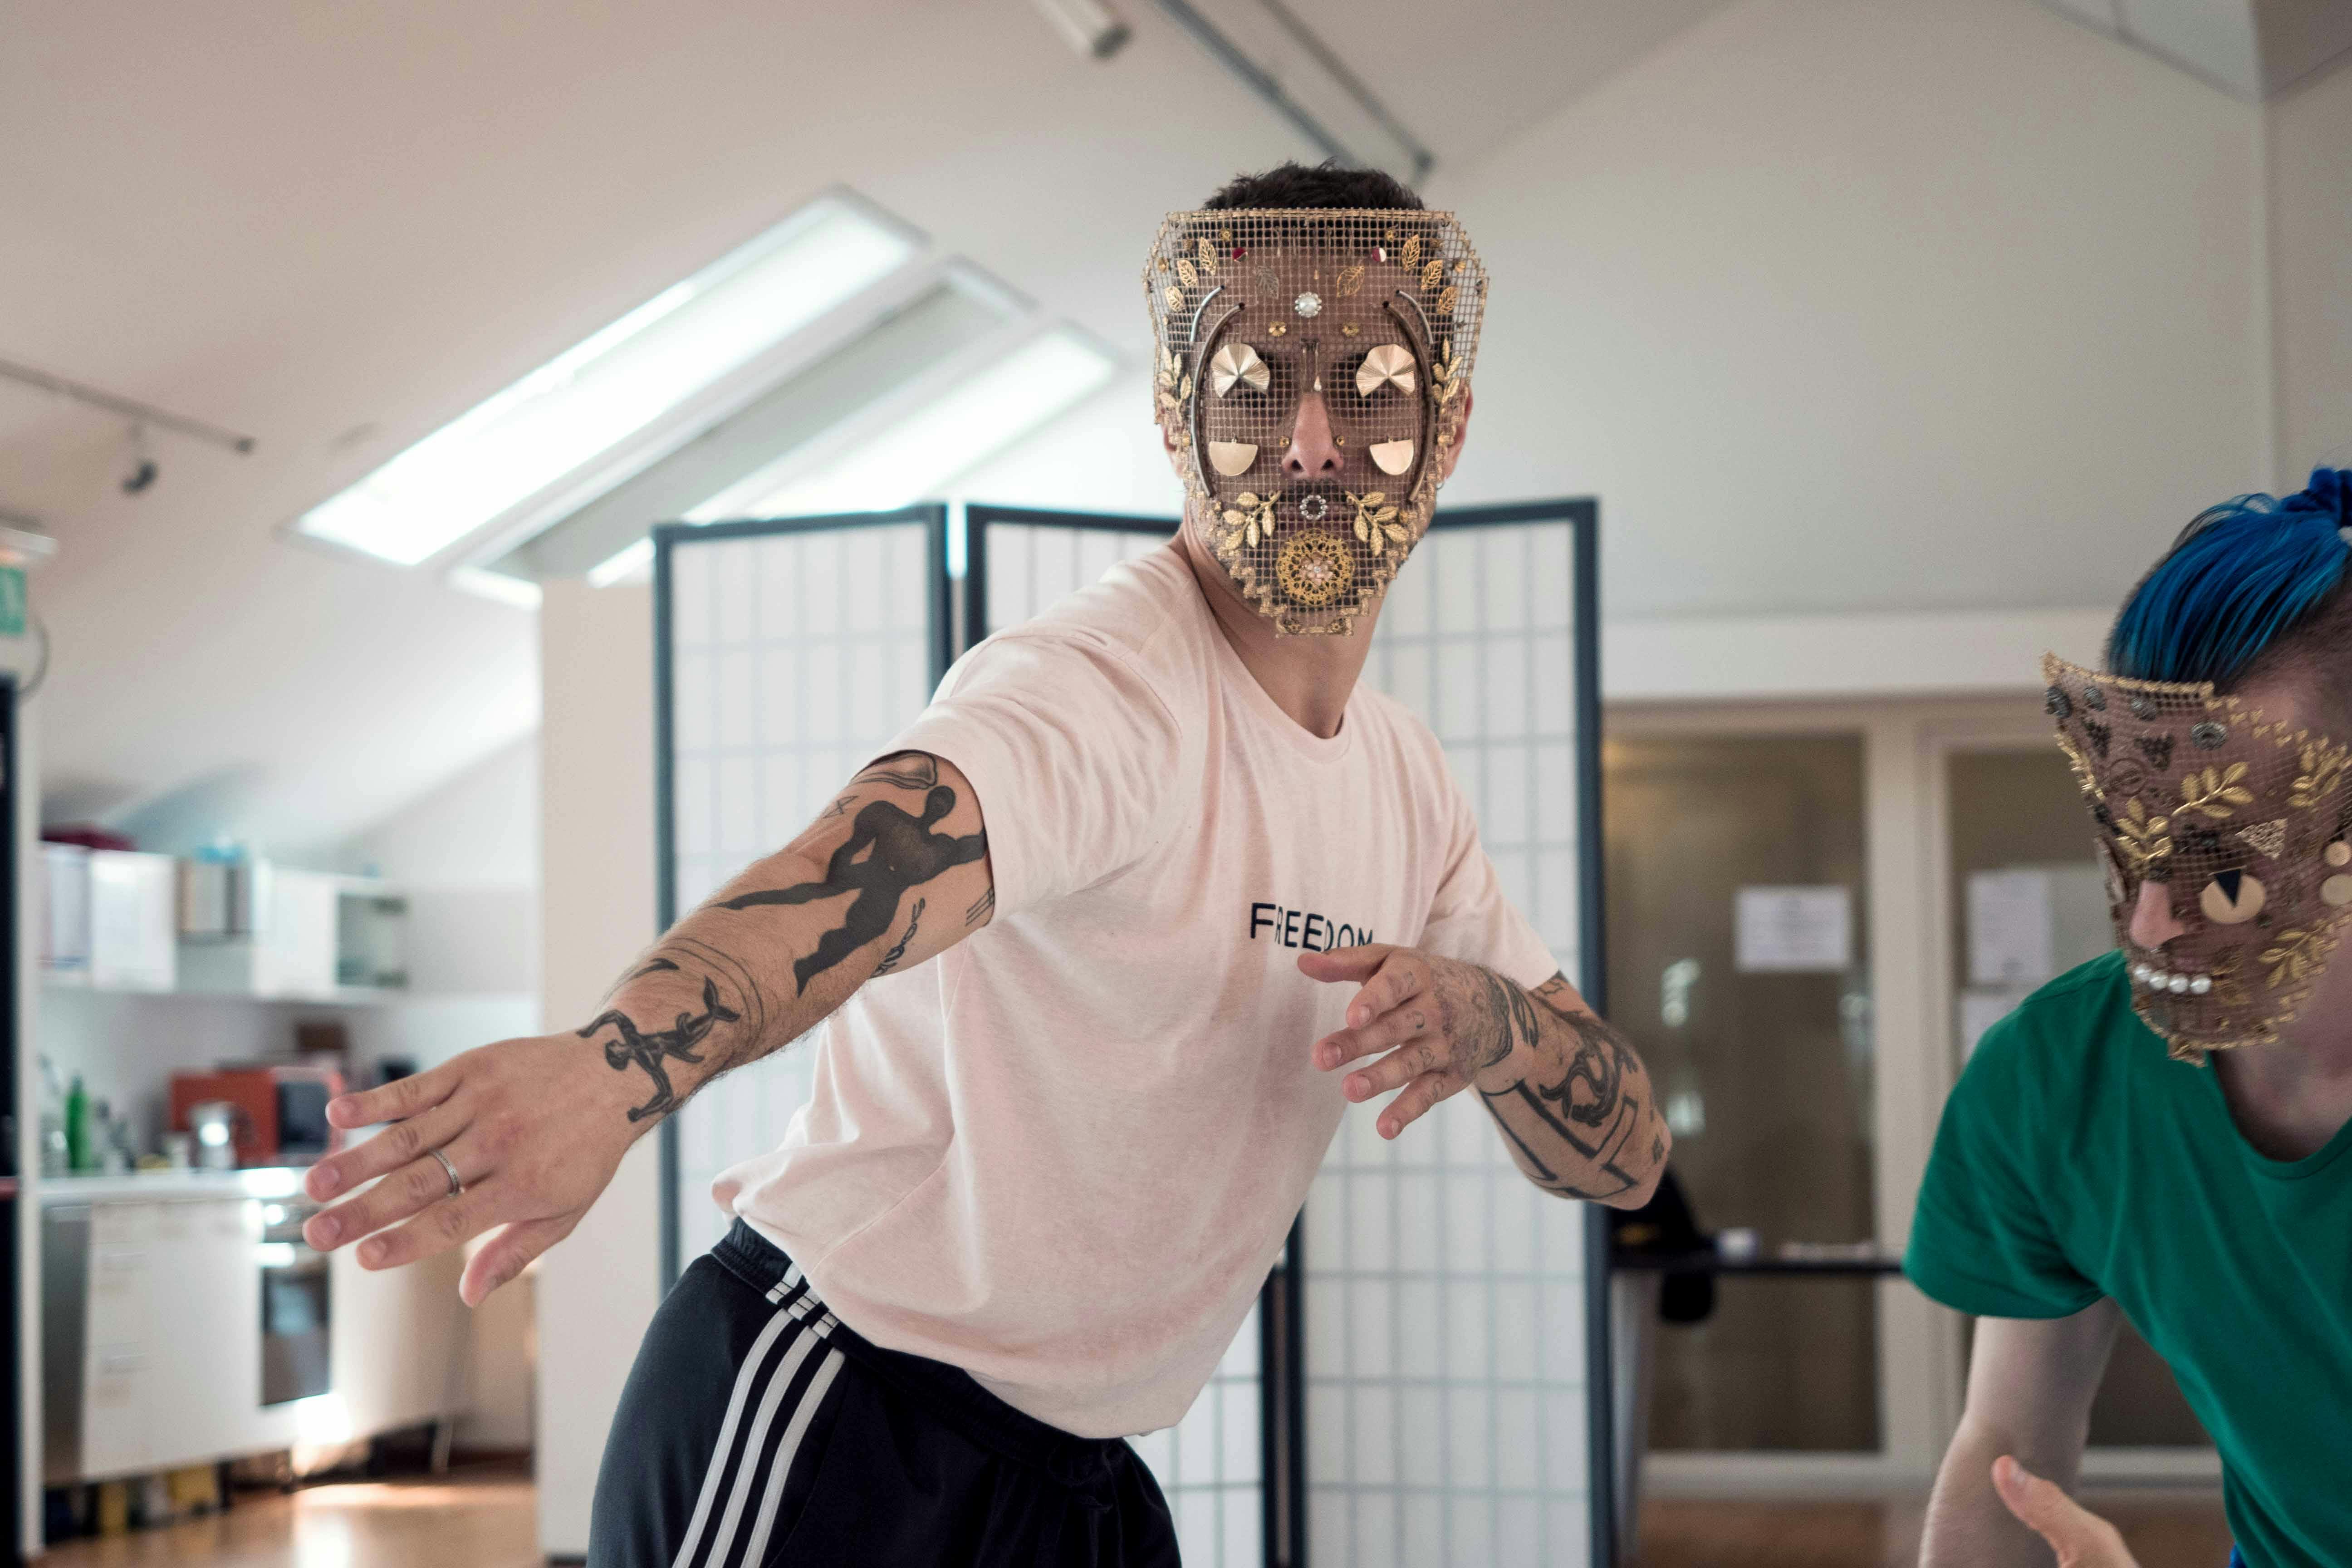 Due danzatori in prova. Entrambi indossano una maschera reticolata, decorata con foglie, lamine e forme in oro e acciaio. 